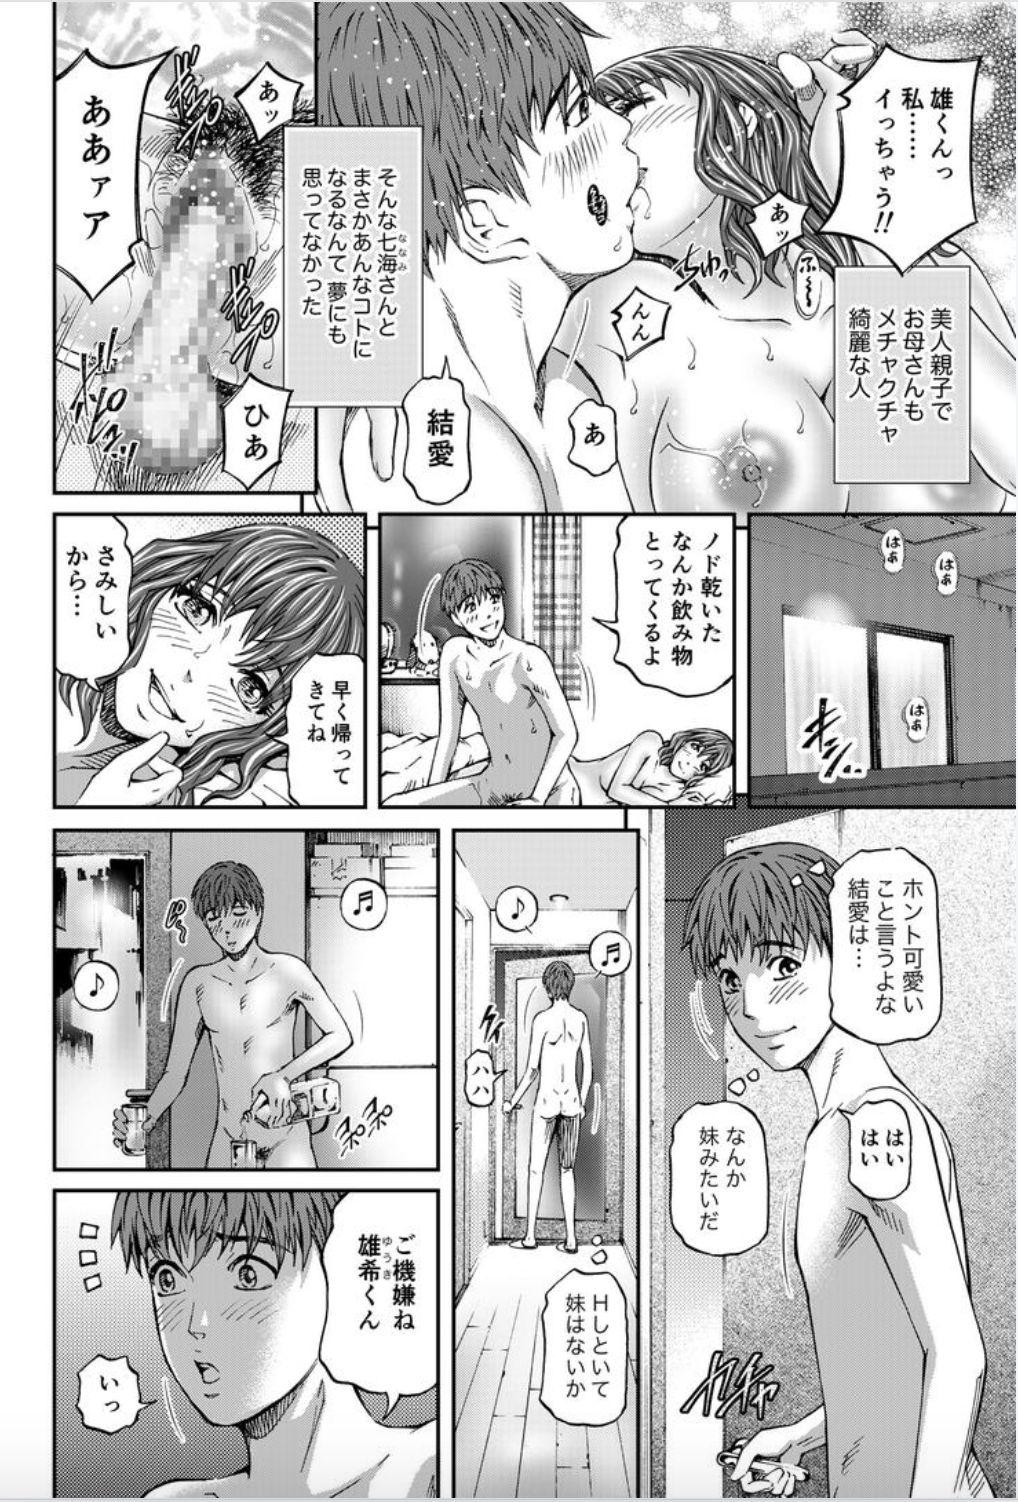 Young Petite Porn Onna-tachi ga Iku Toki... Ero Drama Vol. 8 Datte, Kanojo no Haha ga... Nudist - Page 4